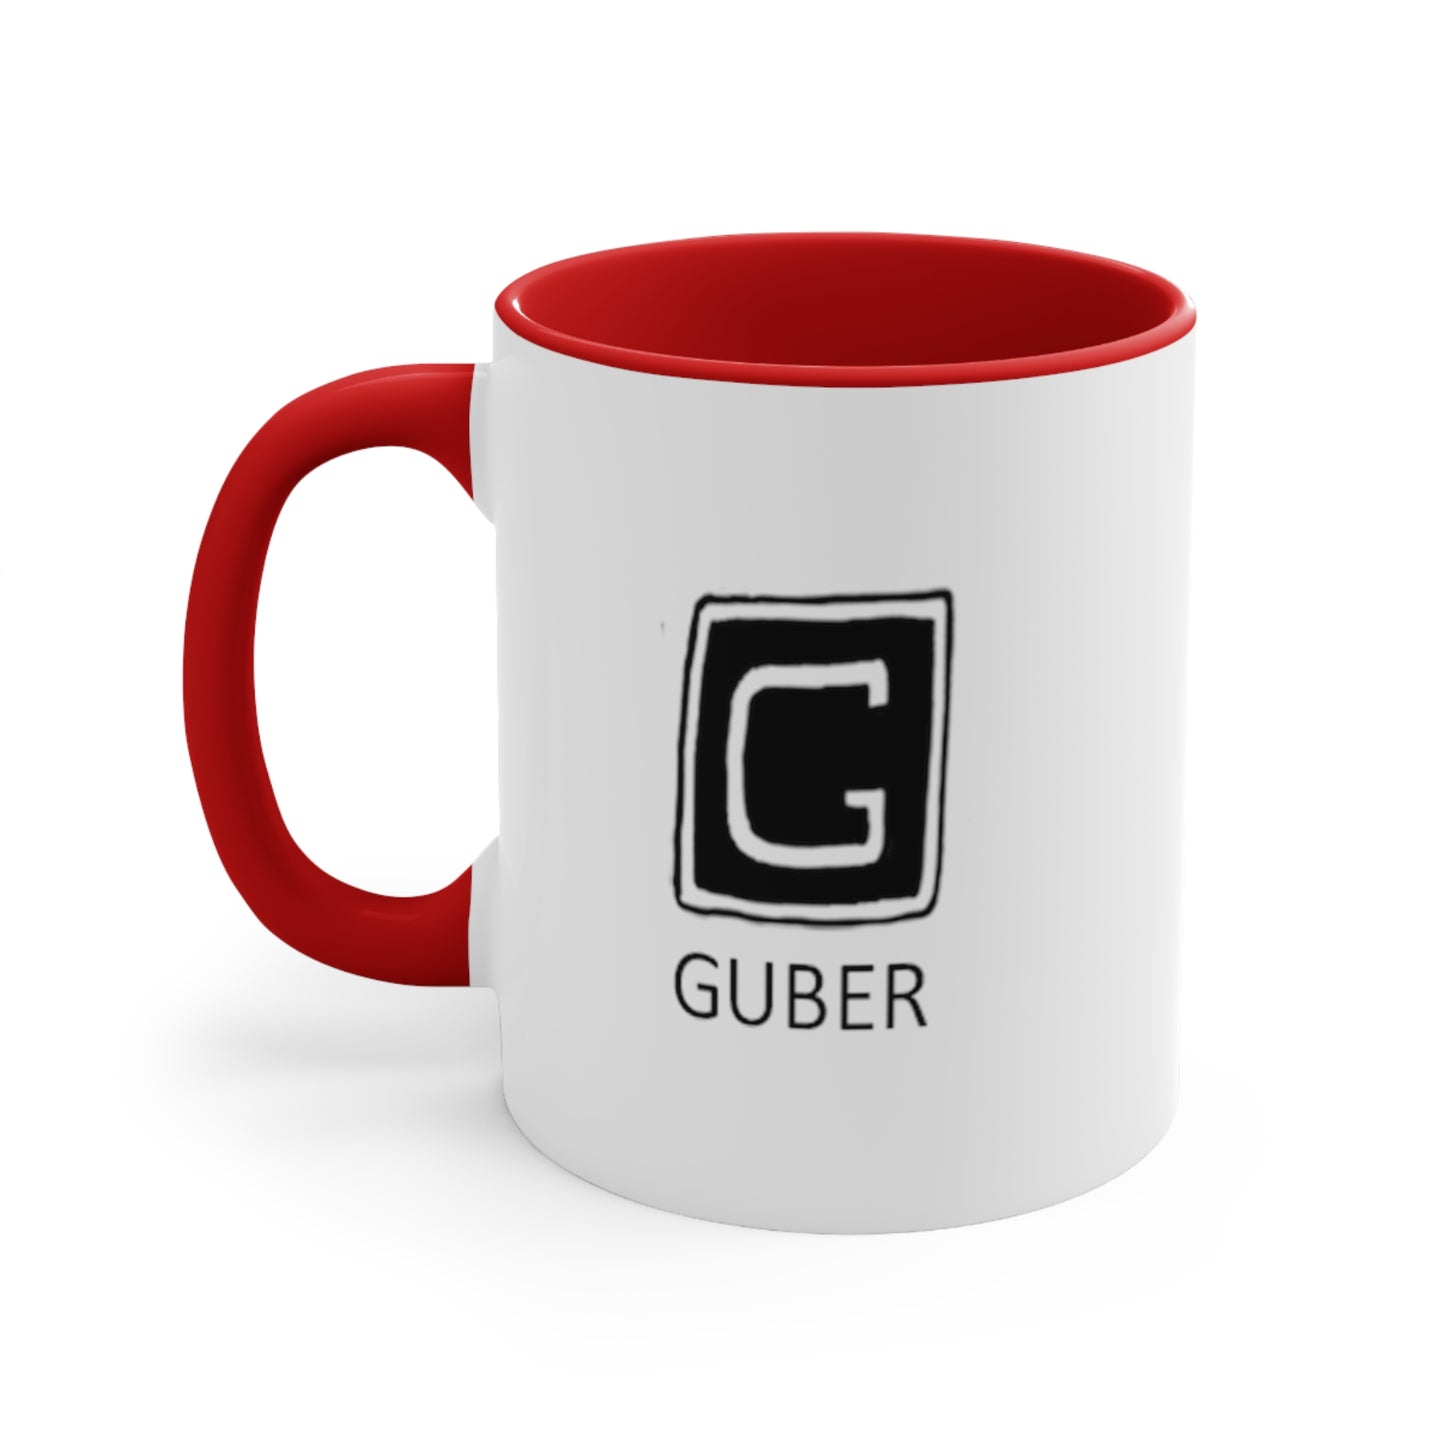 Guber Coffee Mug, 11oz